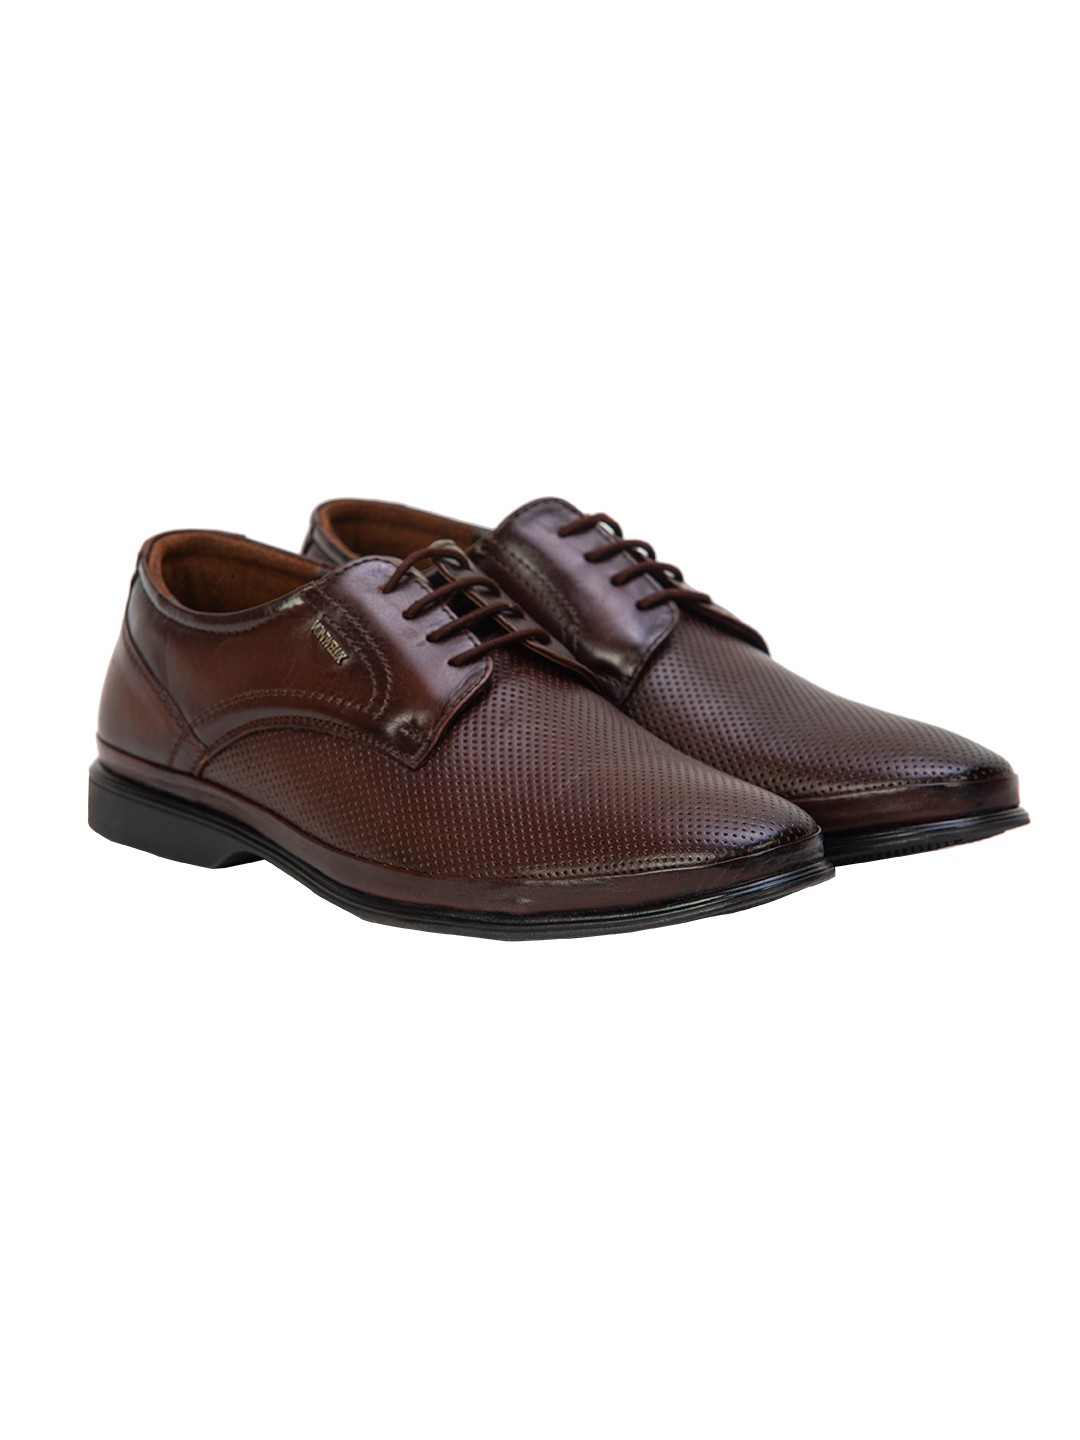 Buy Von Wellx Germany Comfort Coen Brown Shoes Online in Patna